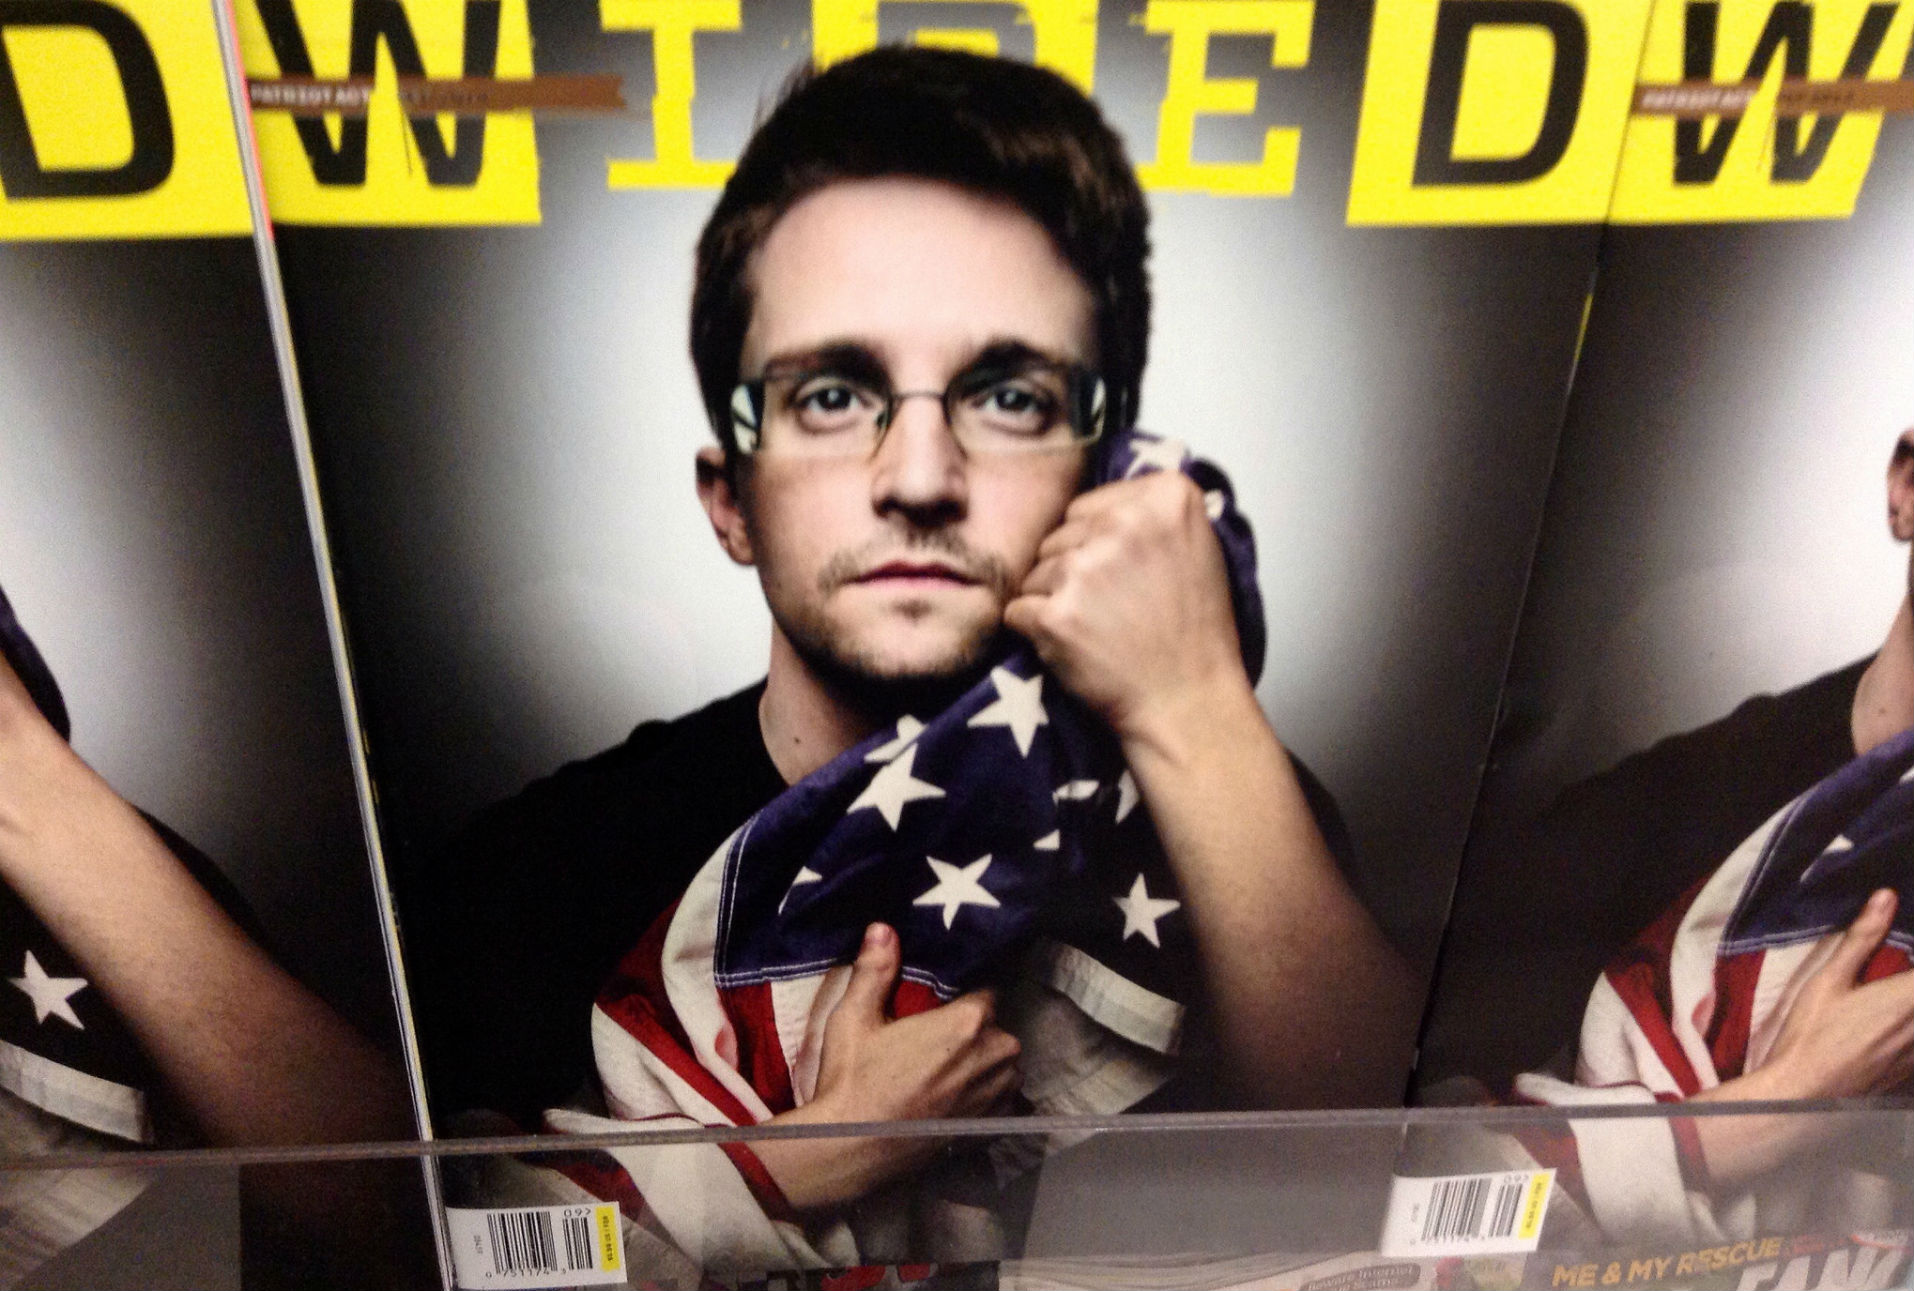 “La privacidad es el derecho a una mente libre”: Edward Snowden